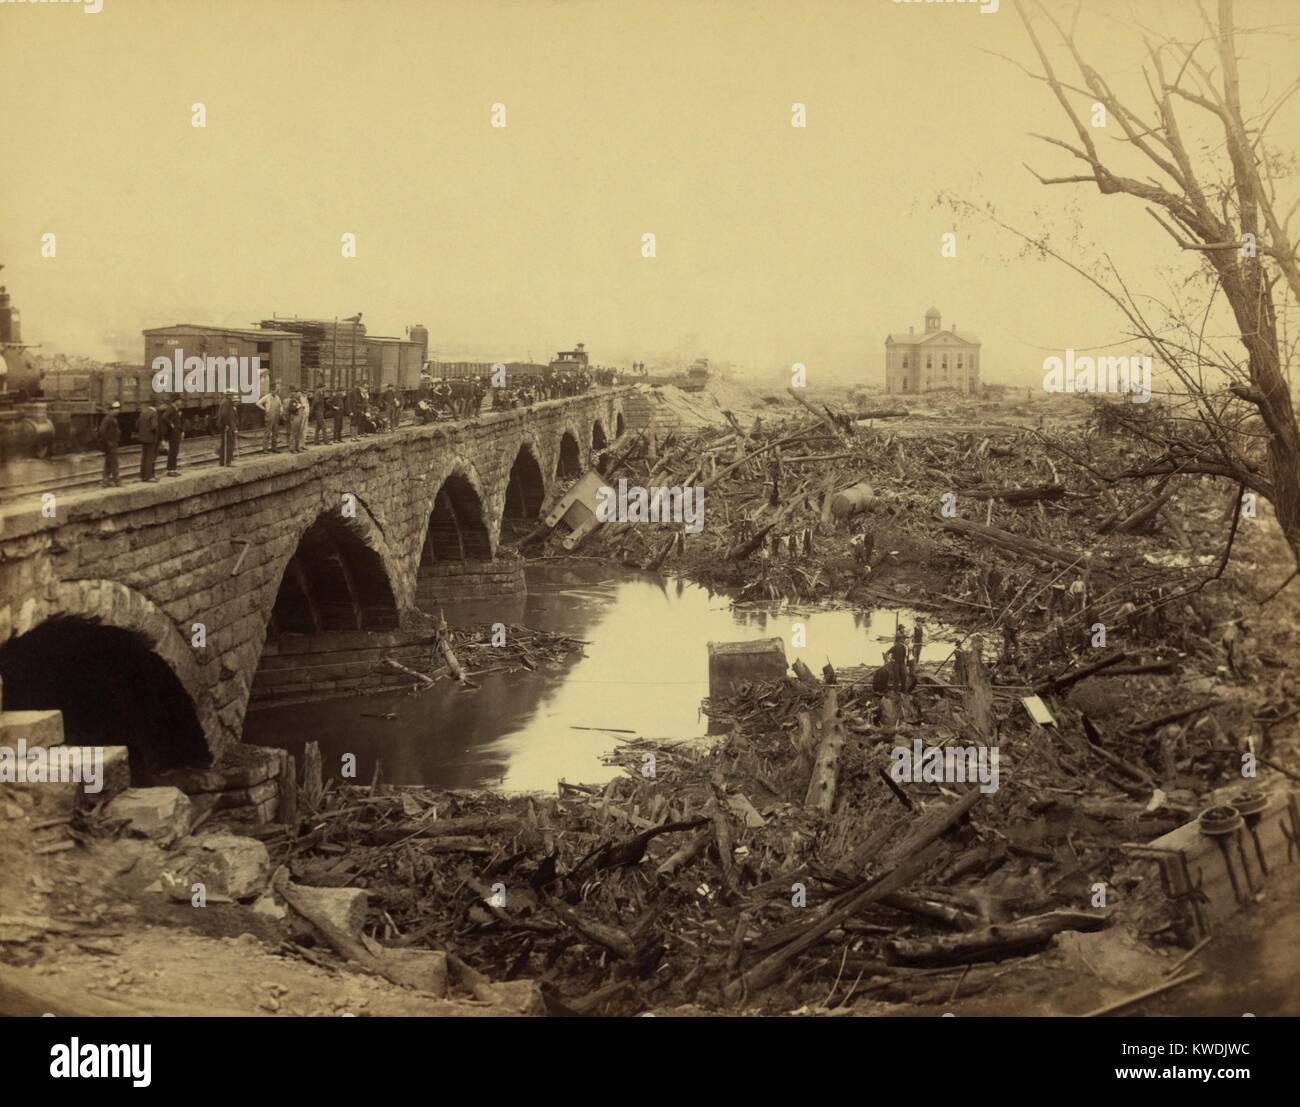 Ablagerungen an der Pennsylvania Railroad steinerne Brücke, nach der die Johnstown Flood vom 31. Mai 1889. Dies war der entsetzlichsten Ort der Katastrophe. Die Brücke blockiert den Angriff von Tonnen von Schutt, durch das Hochwasser durchgeführt. Brach ein Feuer in den 30 Hektar großen Ablagerungen, brennen für drei Tage, töten Dutzende Menschen immer noch gefangen in den Häusern (BSLOC 2017 17 80) Stockfoto